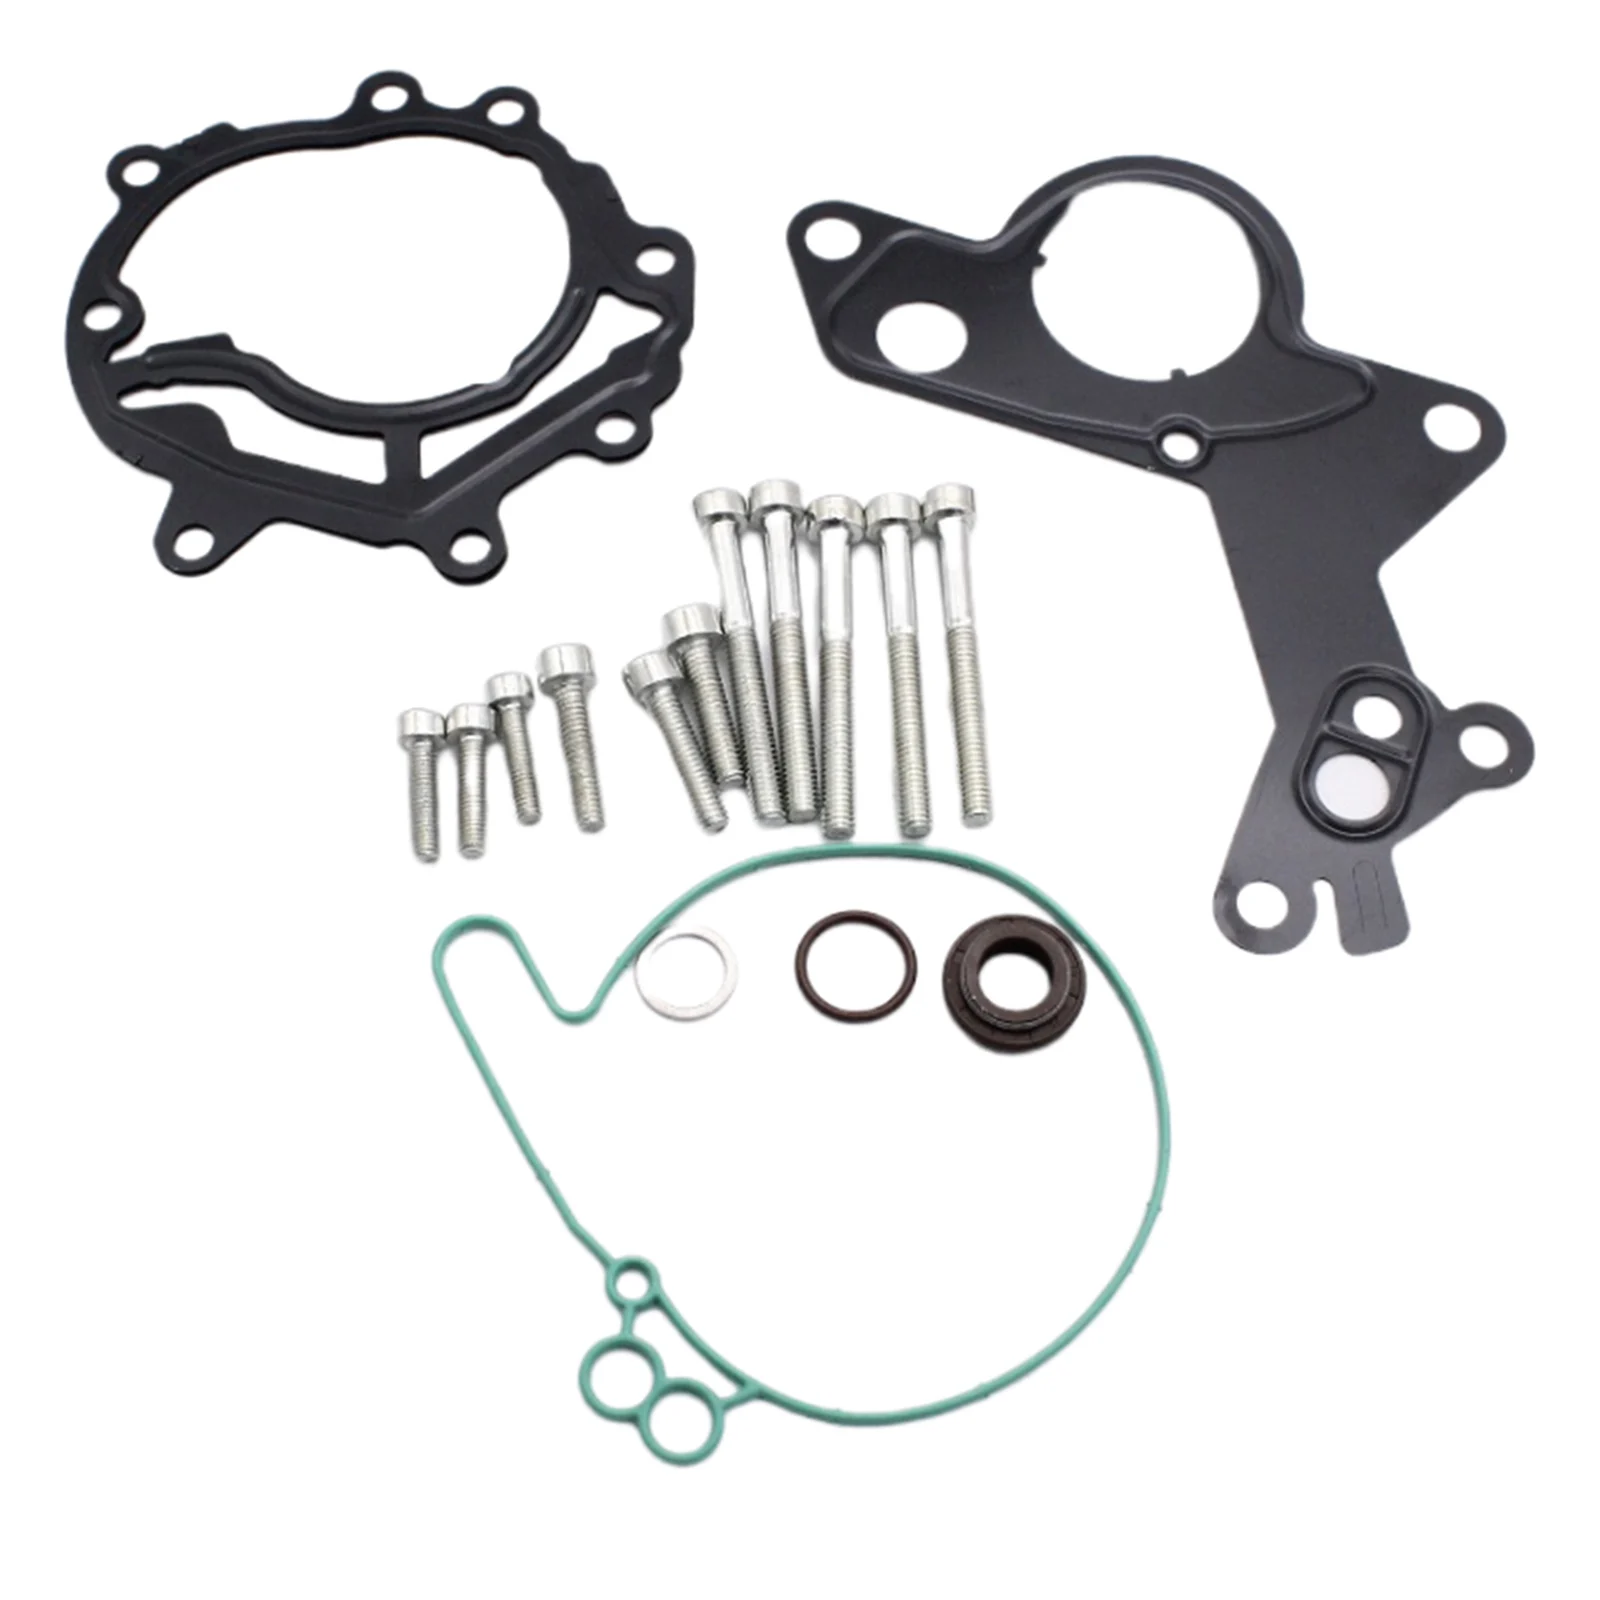 Vacuum Fuel Tandem Pump Repair Kit for VW, Car Accessories, 038145209, for , for